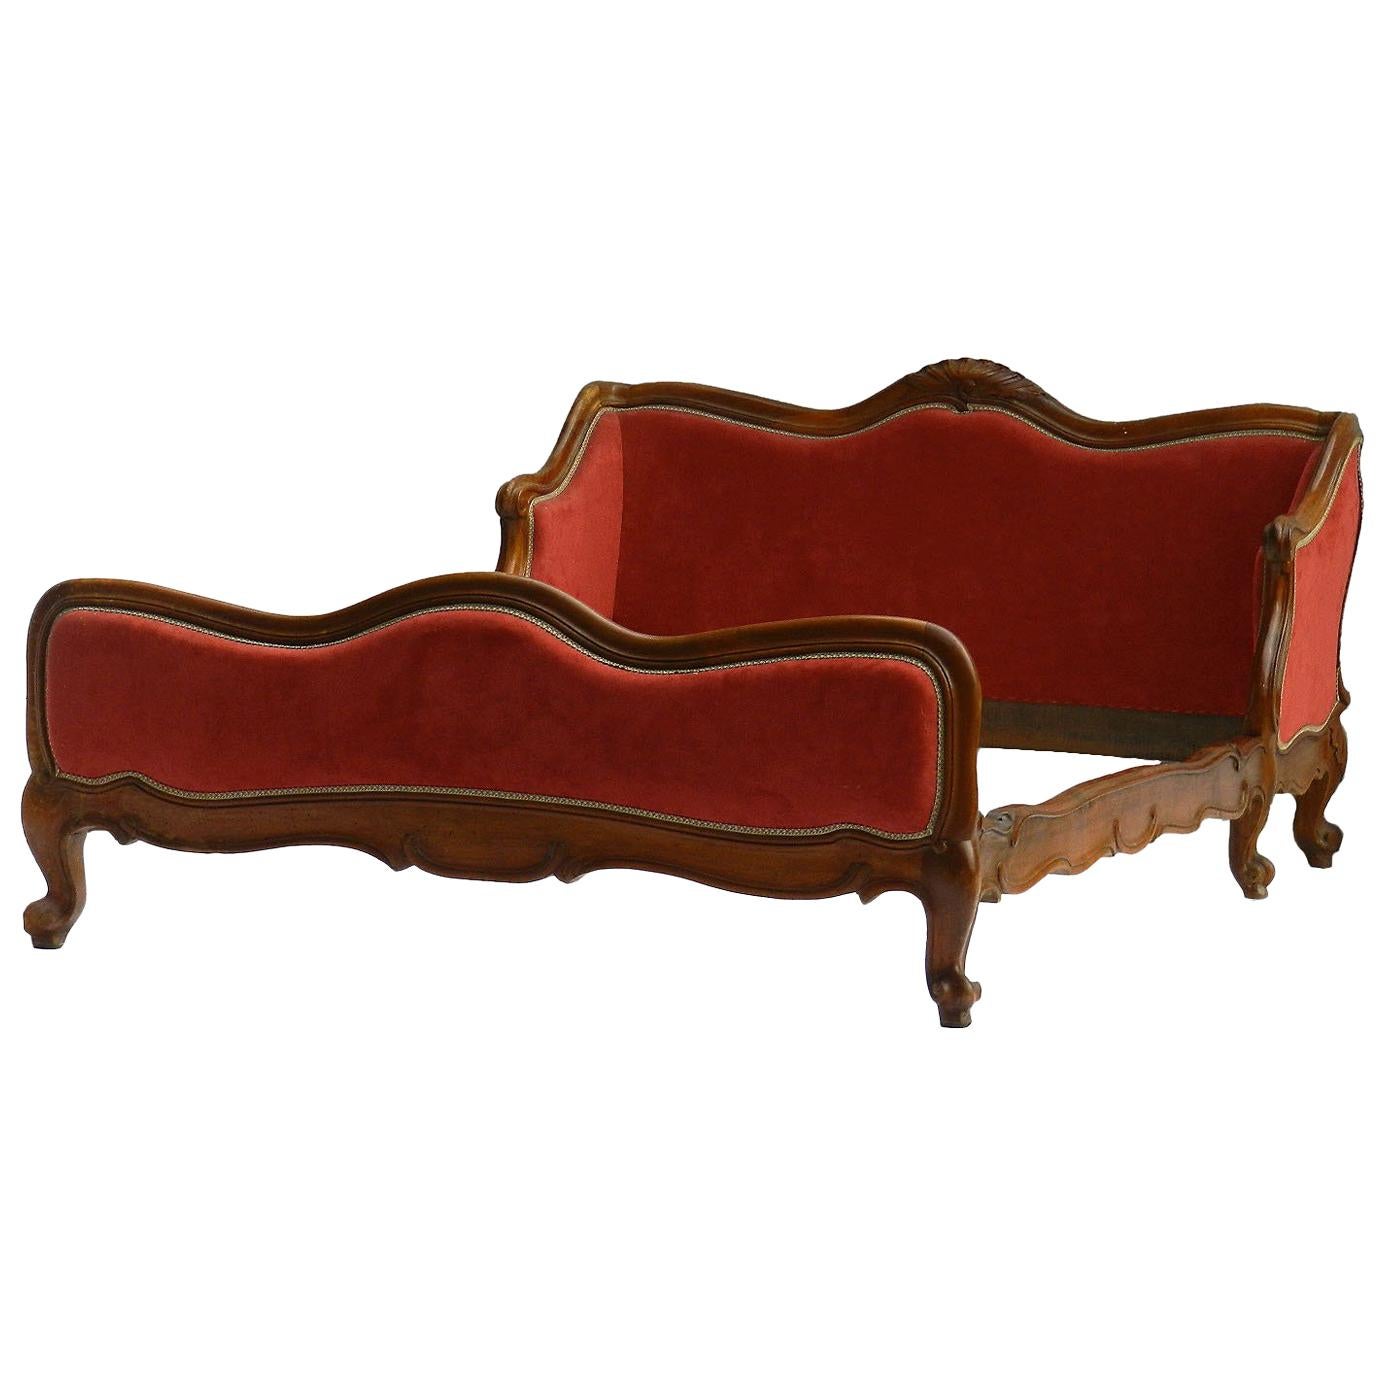 Antike Französisch Daybed Ende 19. Jahrhundert Louis XV Revival Sofa verwenden oder wiederherstellen